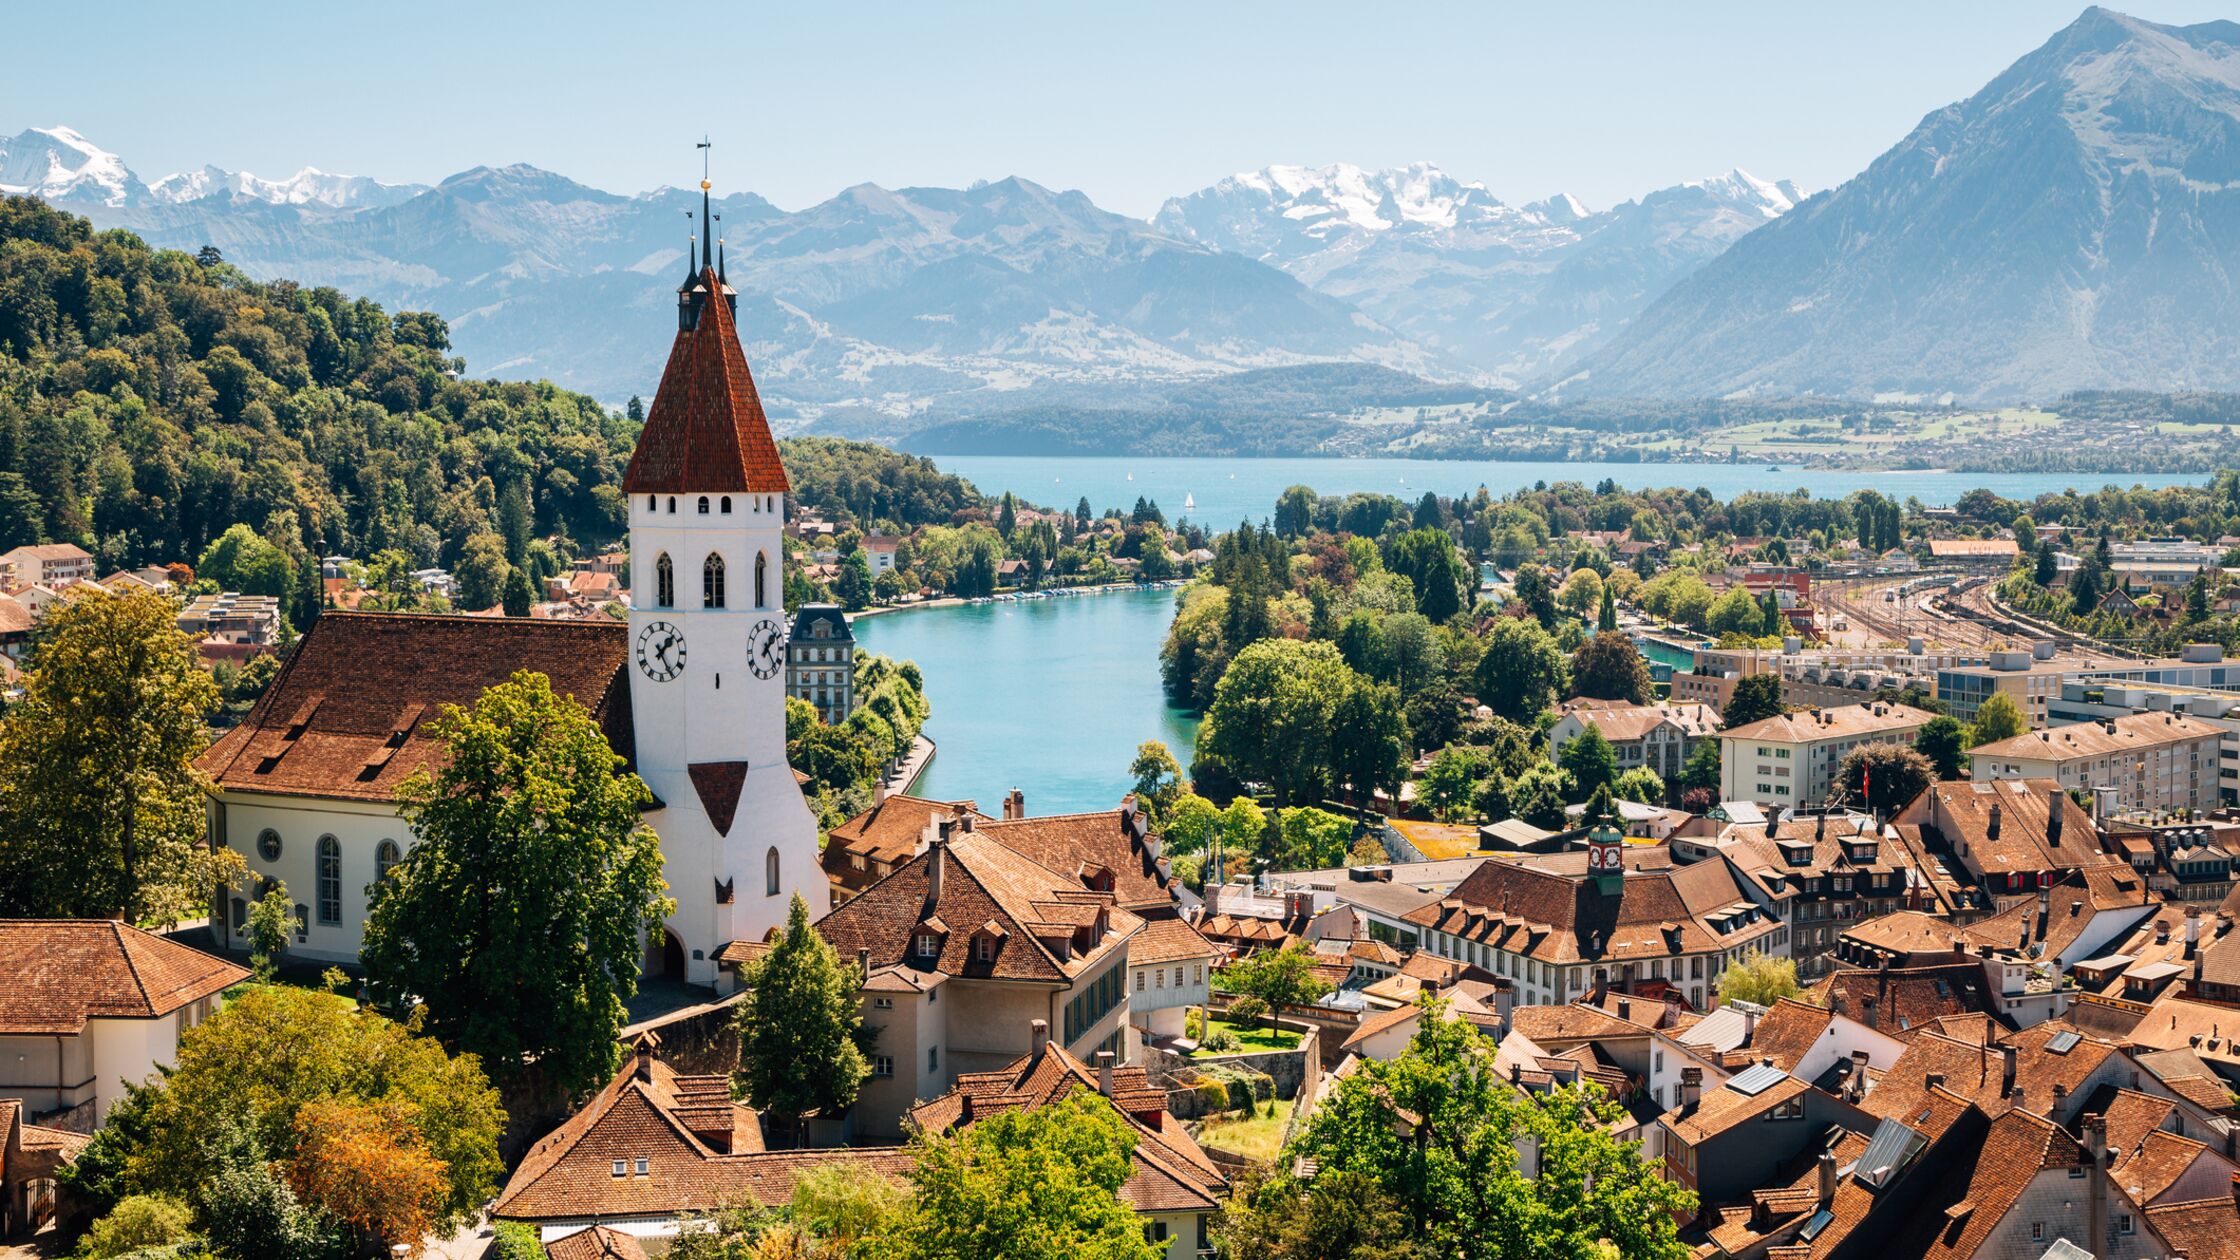 Idyllische Kleinstadt in der Schweiz